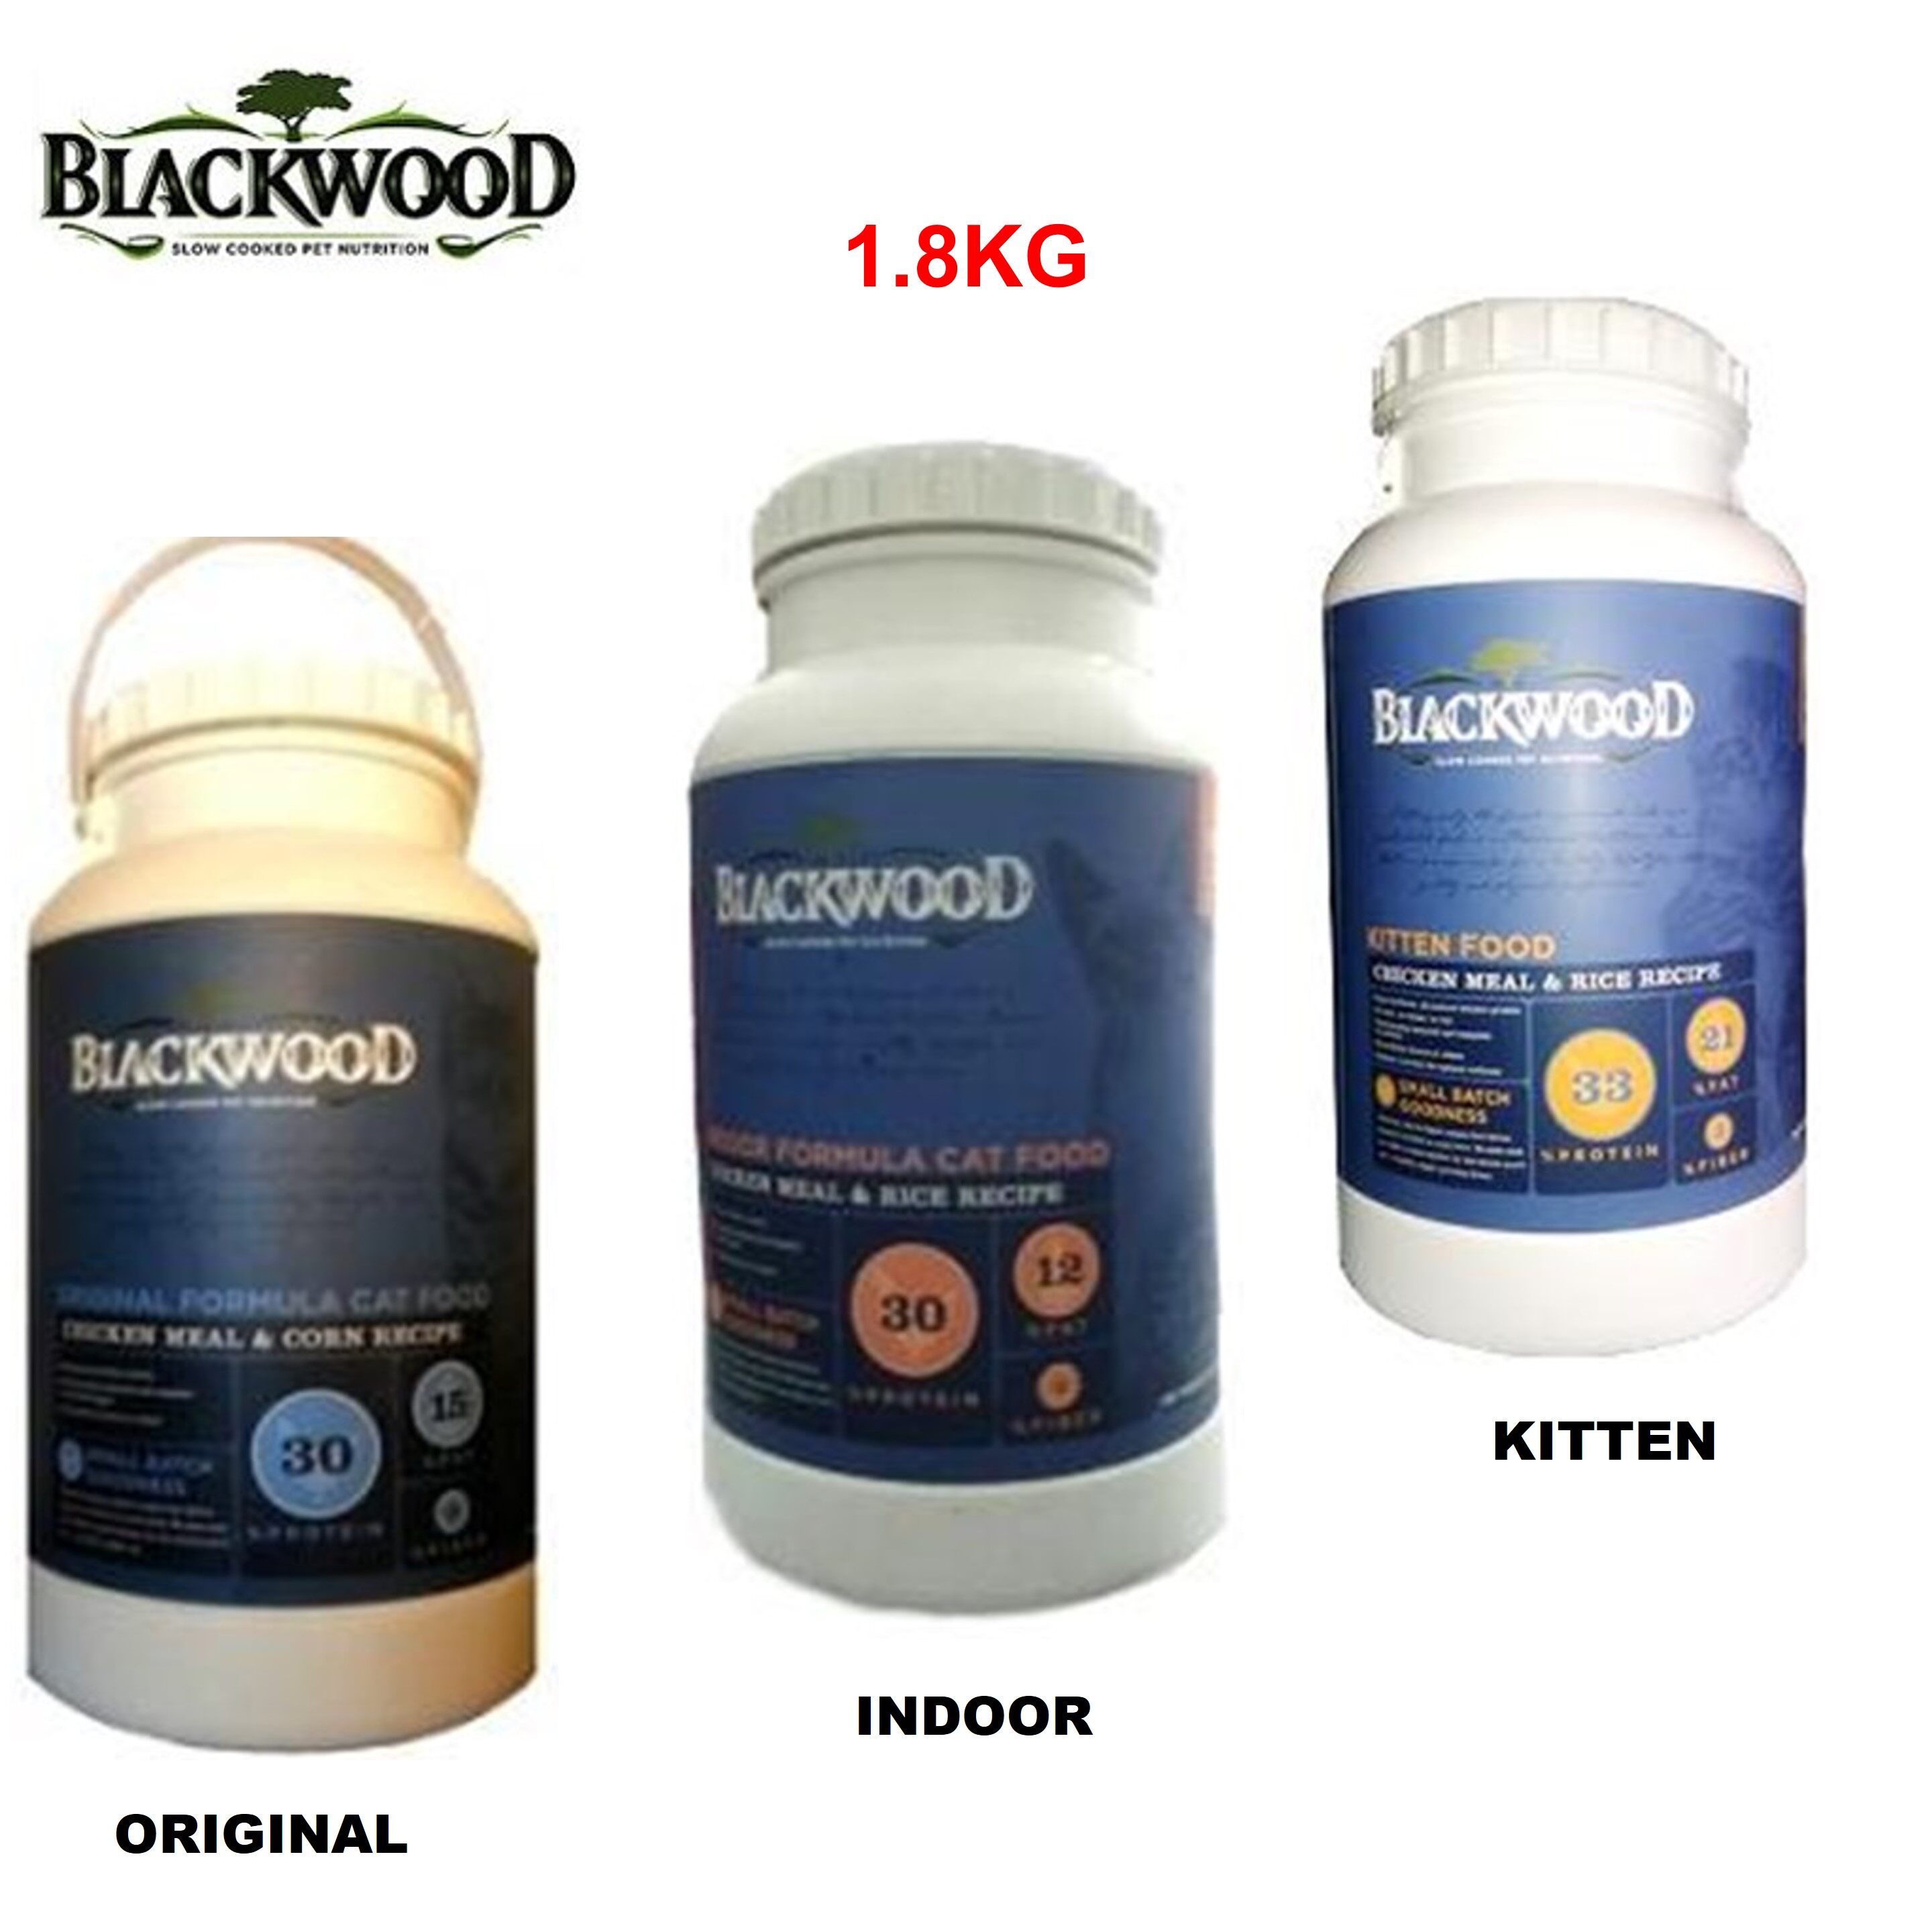 blackwood kitten